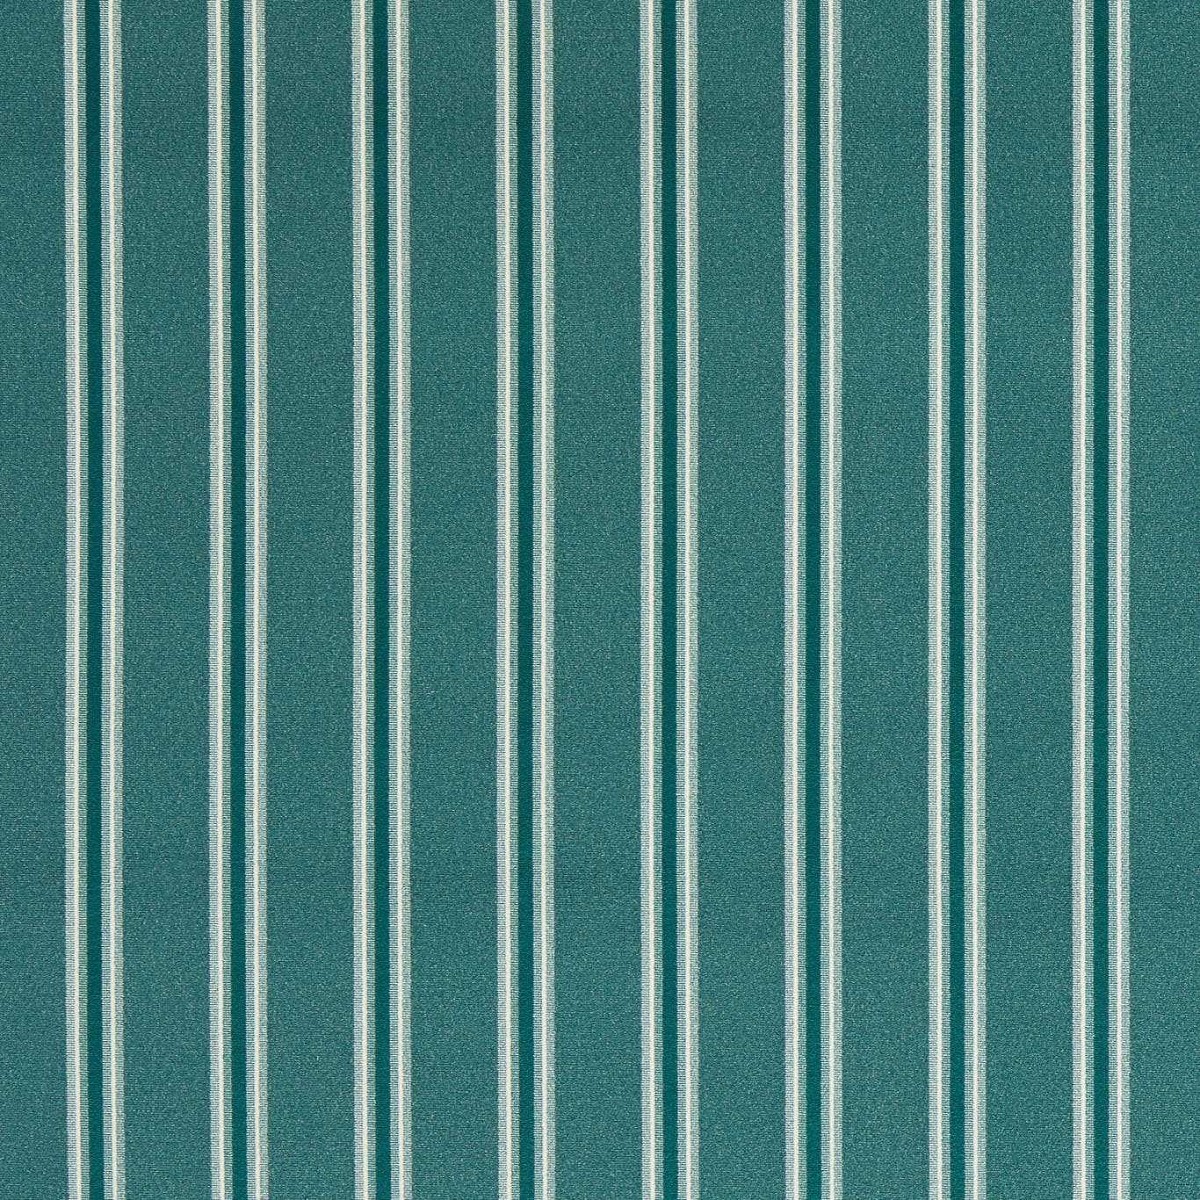 Bowfell Teal Fabric by Clarke & Clarke